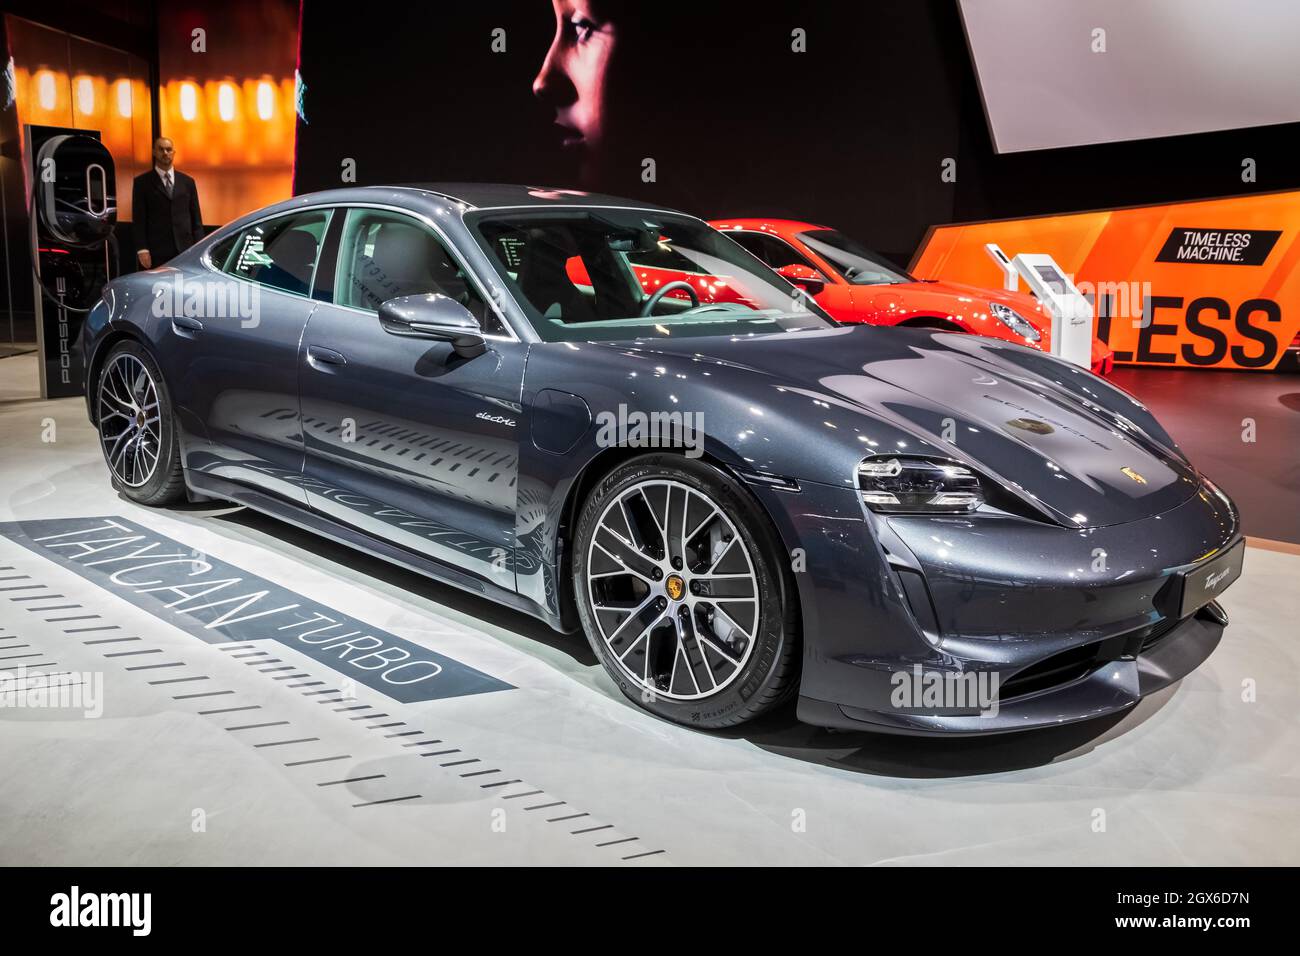 Der elektrische Sportwagen Porsche Tycan Turbo wurde auf der Autosalon 2020 vorgestellt. Brüssel, Belgien - 9. Januar 2020. Stockfoto